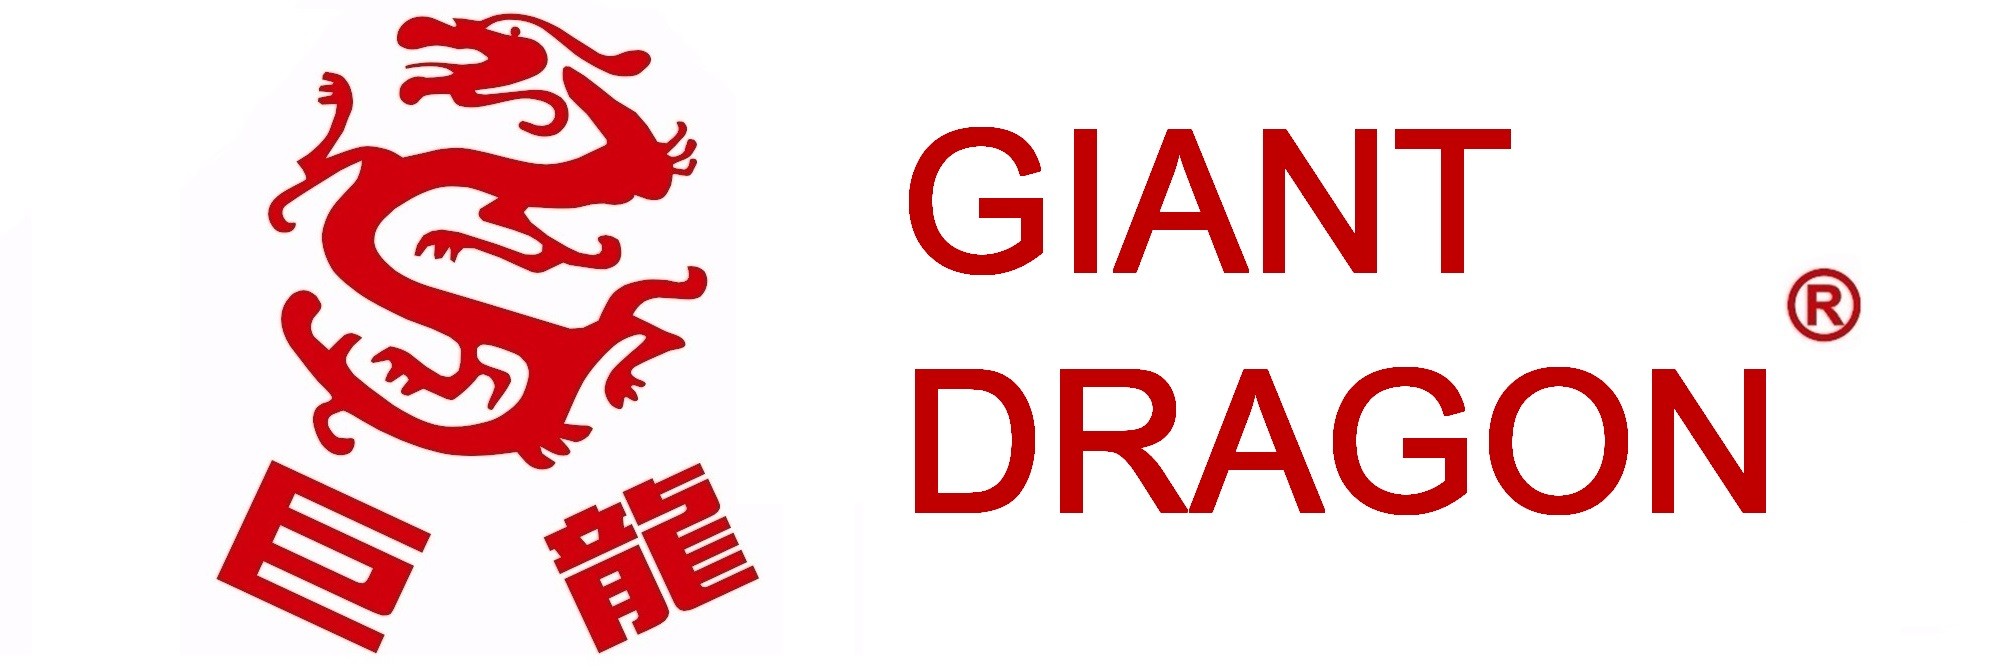 GIANT DRAGON